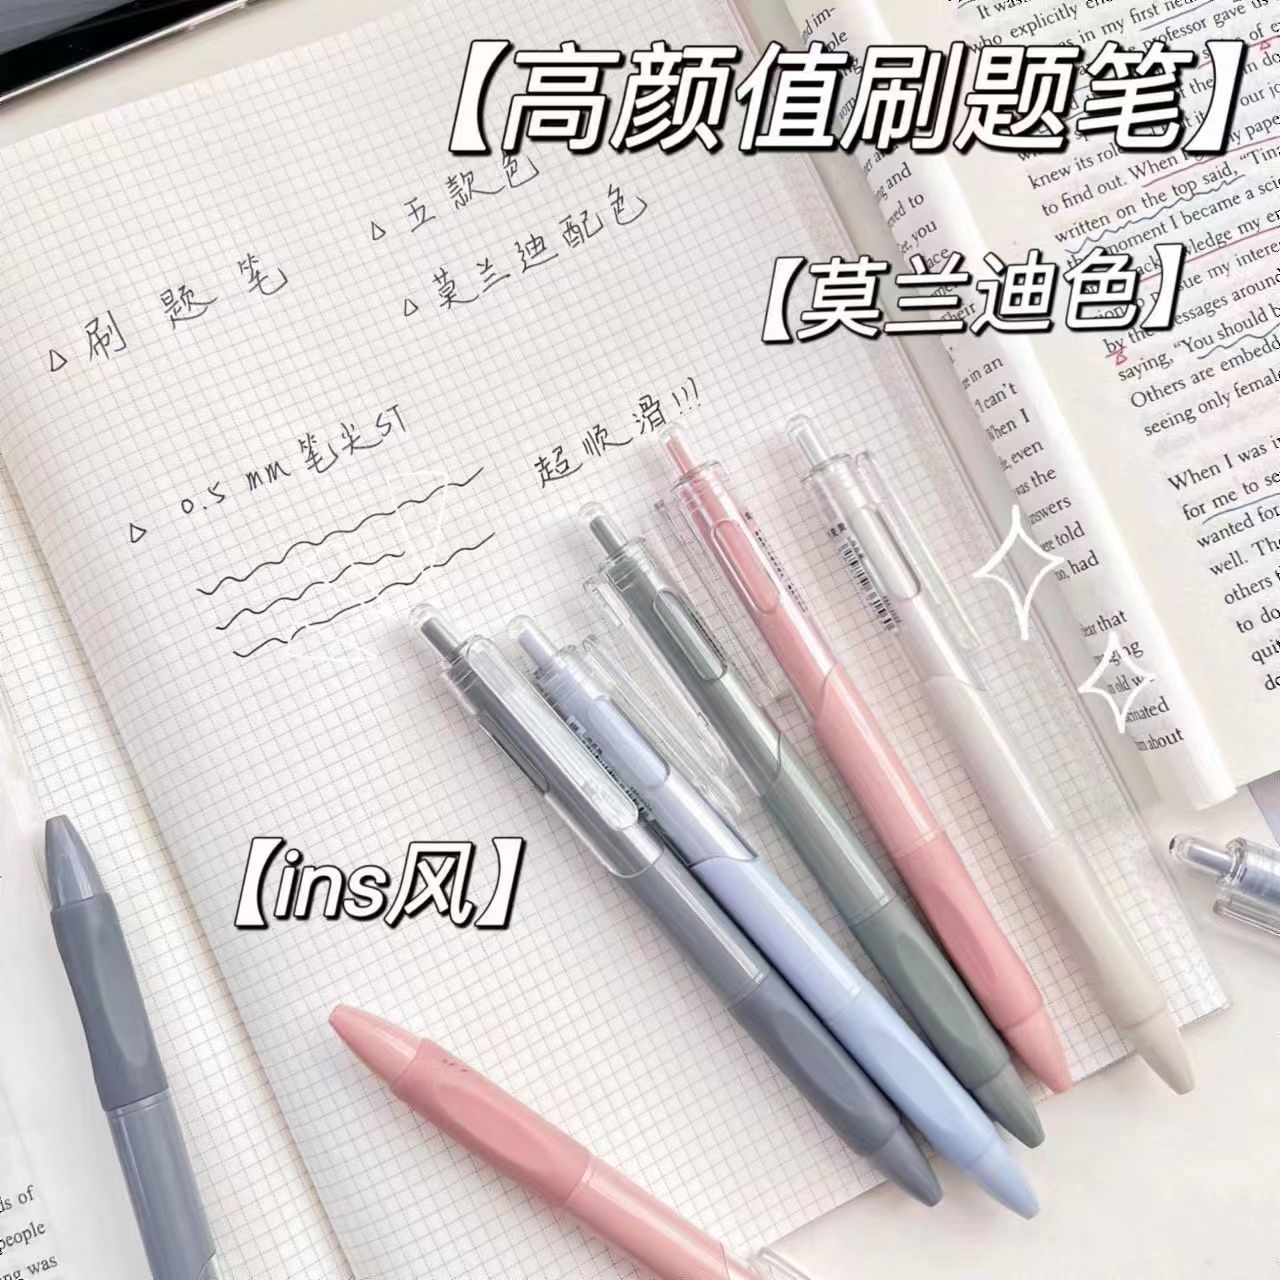 晨光/握笔器/熊猫笔/签字笔/窗口广告笔产品图